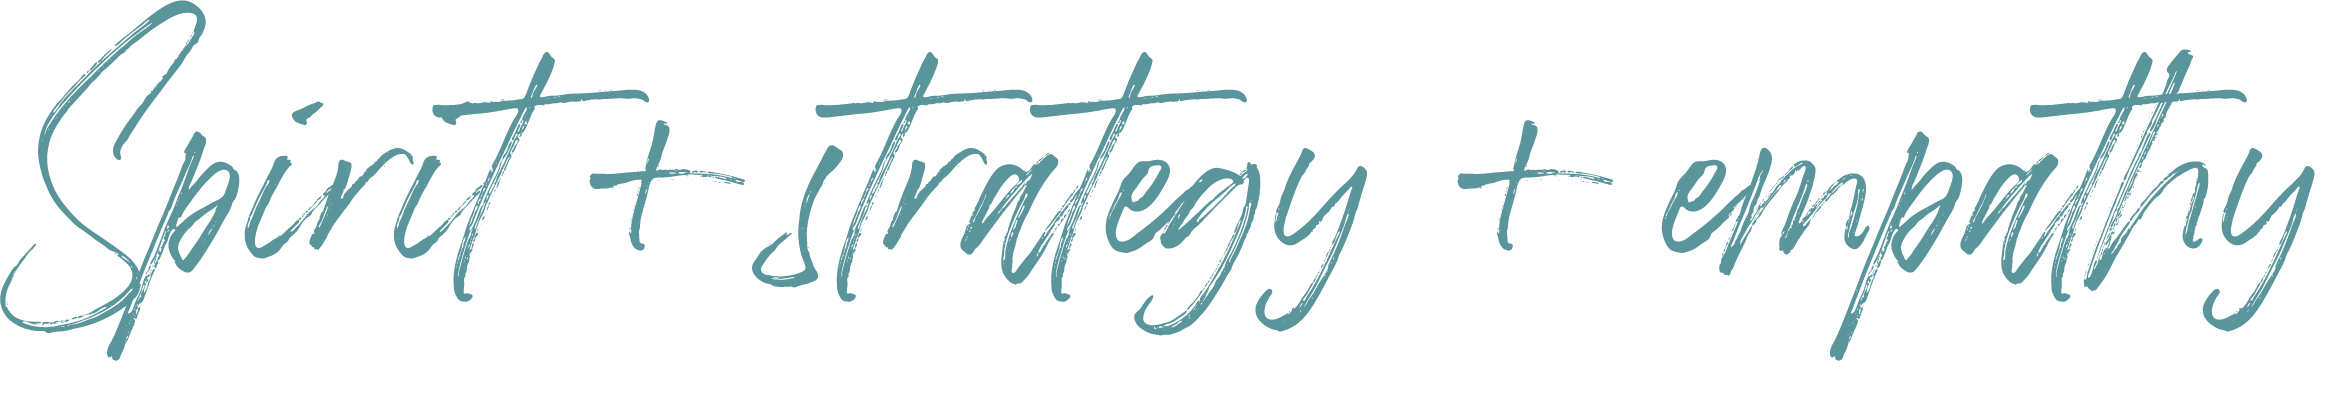 Spirit + strategy + empathy